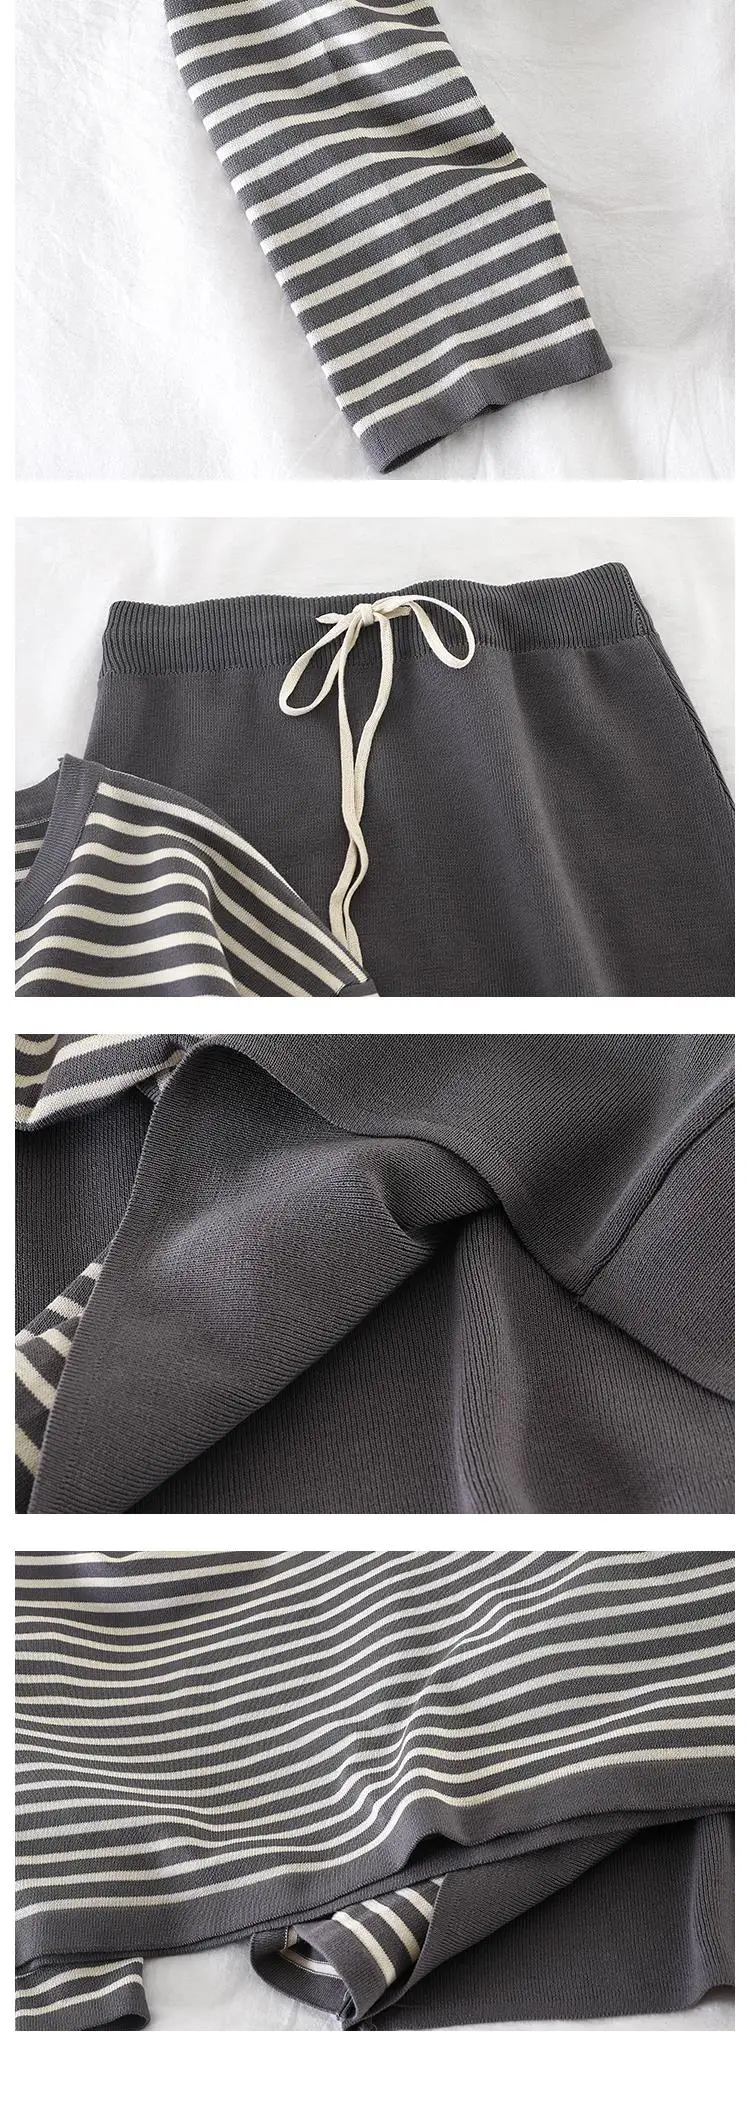 Mooirue осень зима Kintting Женский комплект из двух предметов полосатые топы с длинными рукавами Высокая юбка с тонкой талией винтажные наряды для женщин